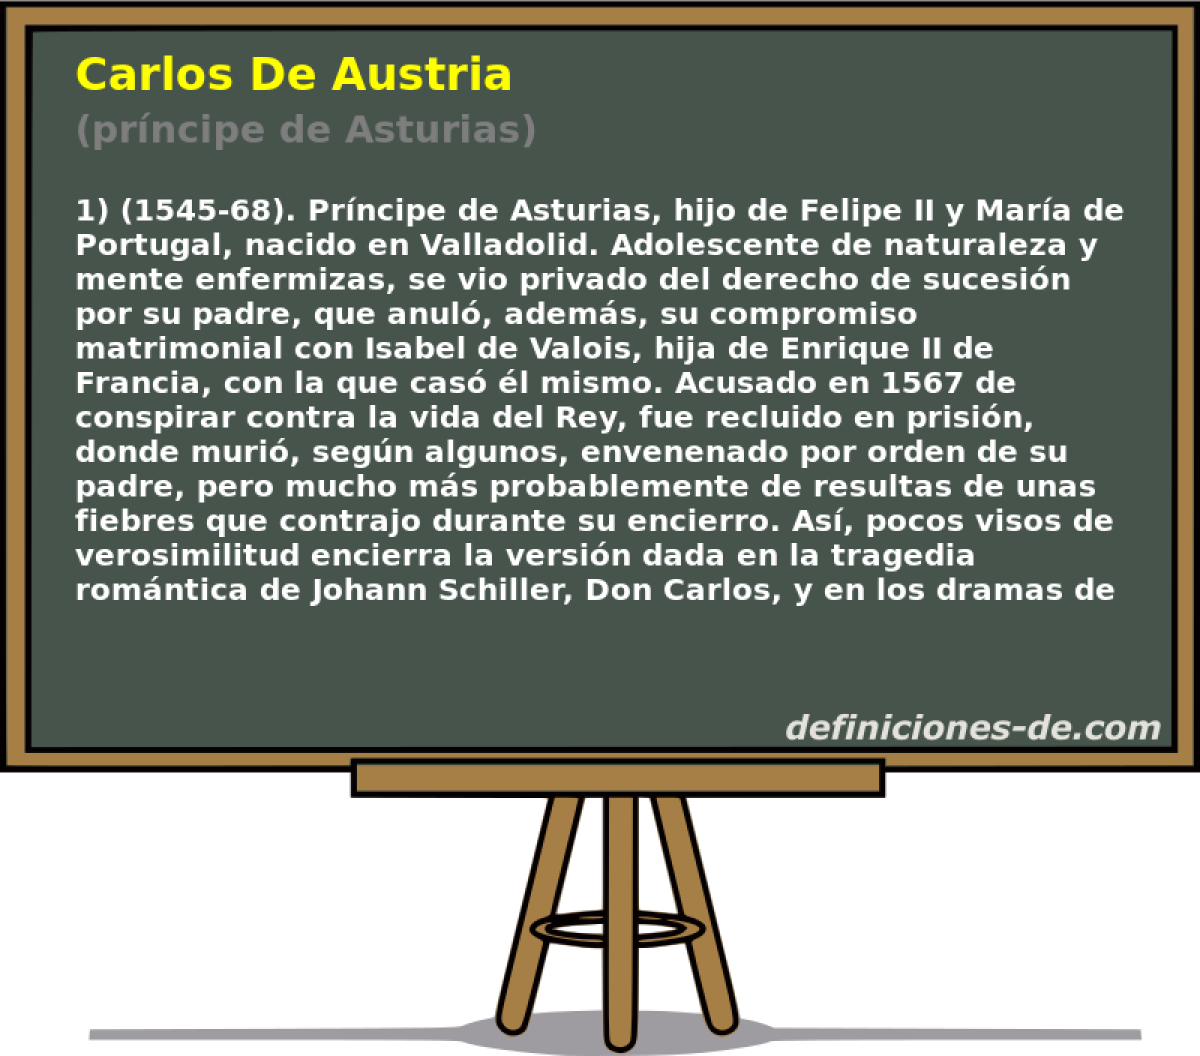 Carlos De Austria (prncipe de Asturias)